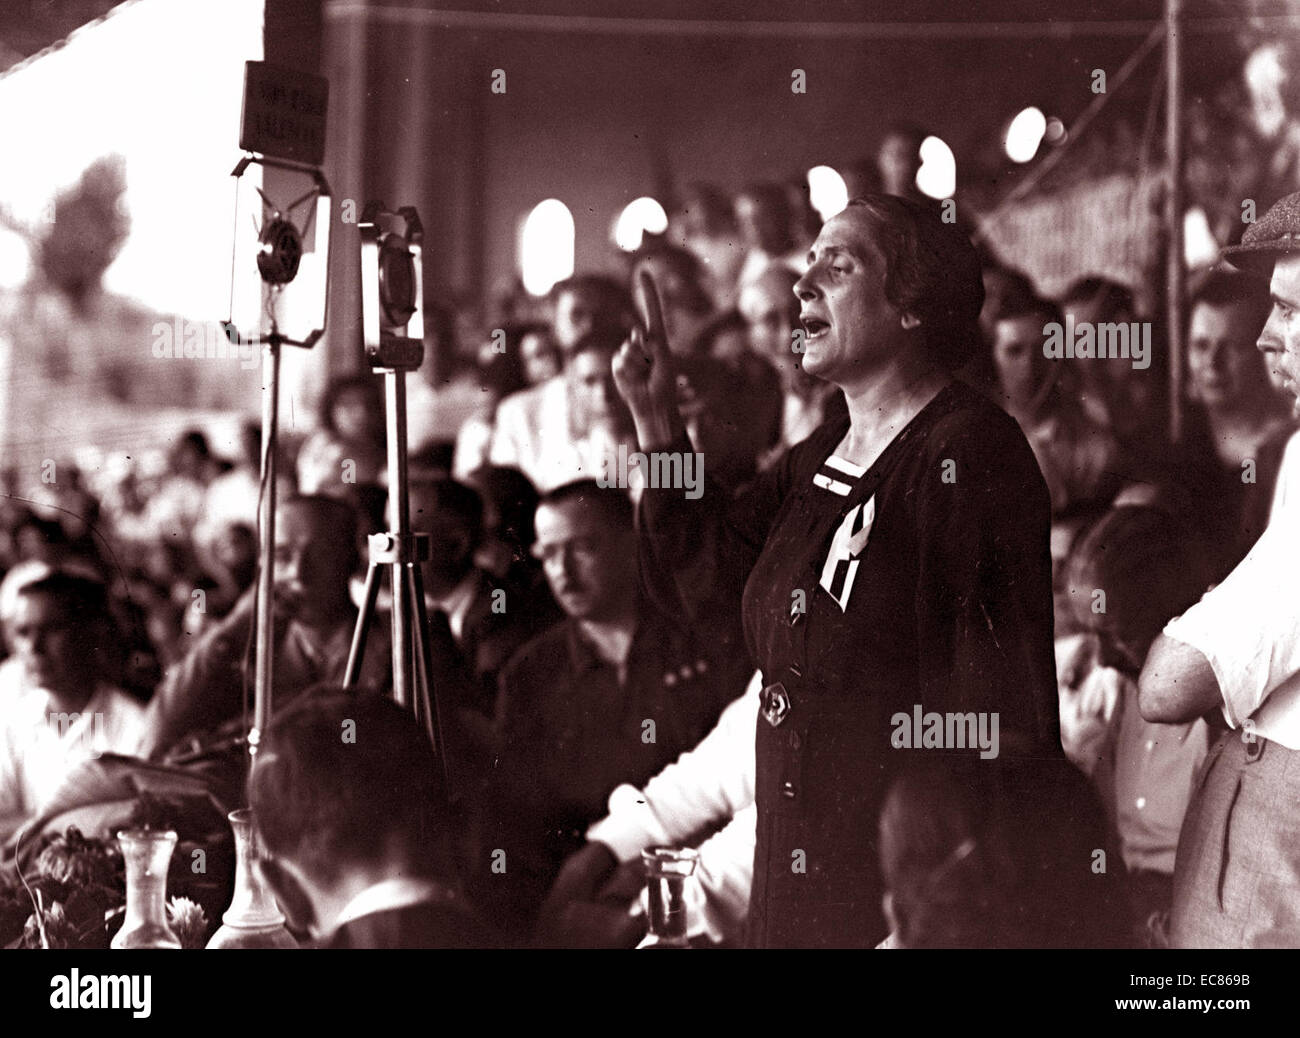 Isidora Dolores Ibárruri (1895 - 1989) noto come 'La Pasionaria'. Lei era una spagnola leader repubblicano della Guerra Civile Spagnola e comunista di origine basca. Lei è forse più noto per la sua difesa della Seconda Repubblica Spagnola e il famoso slogan ¡No pasarán! ("Non devono passare') durante la battaglia di Madrid. Foto Stock